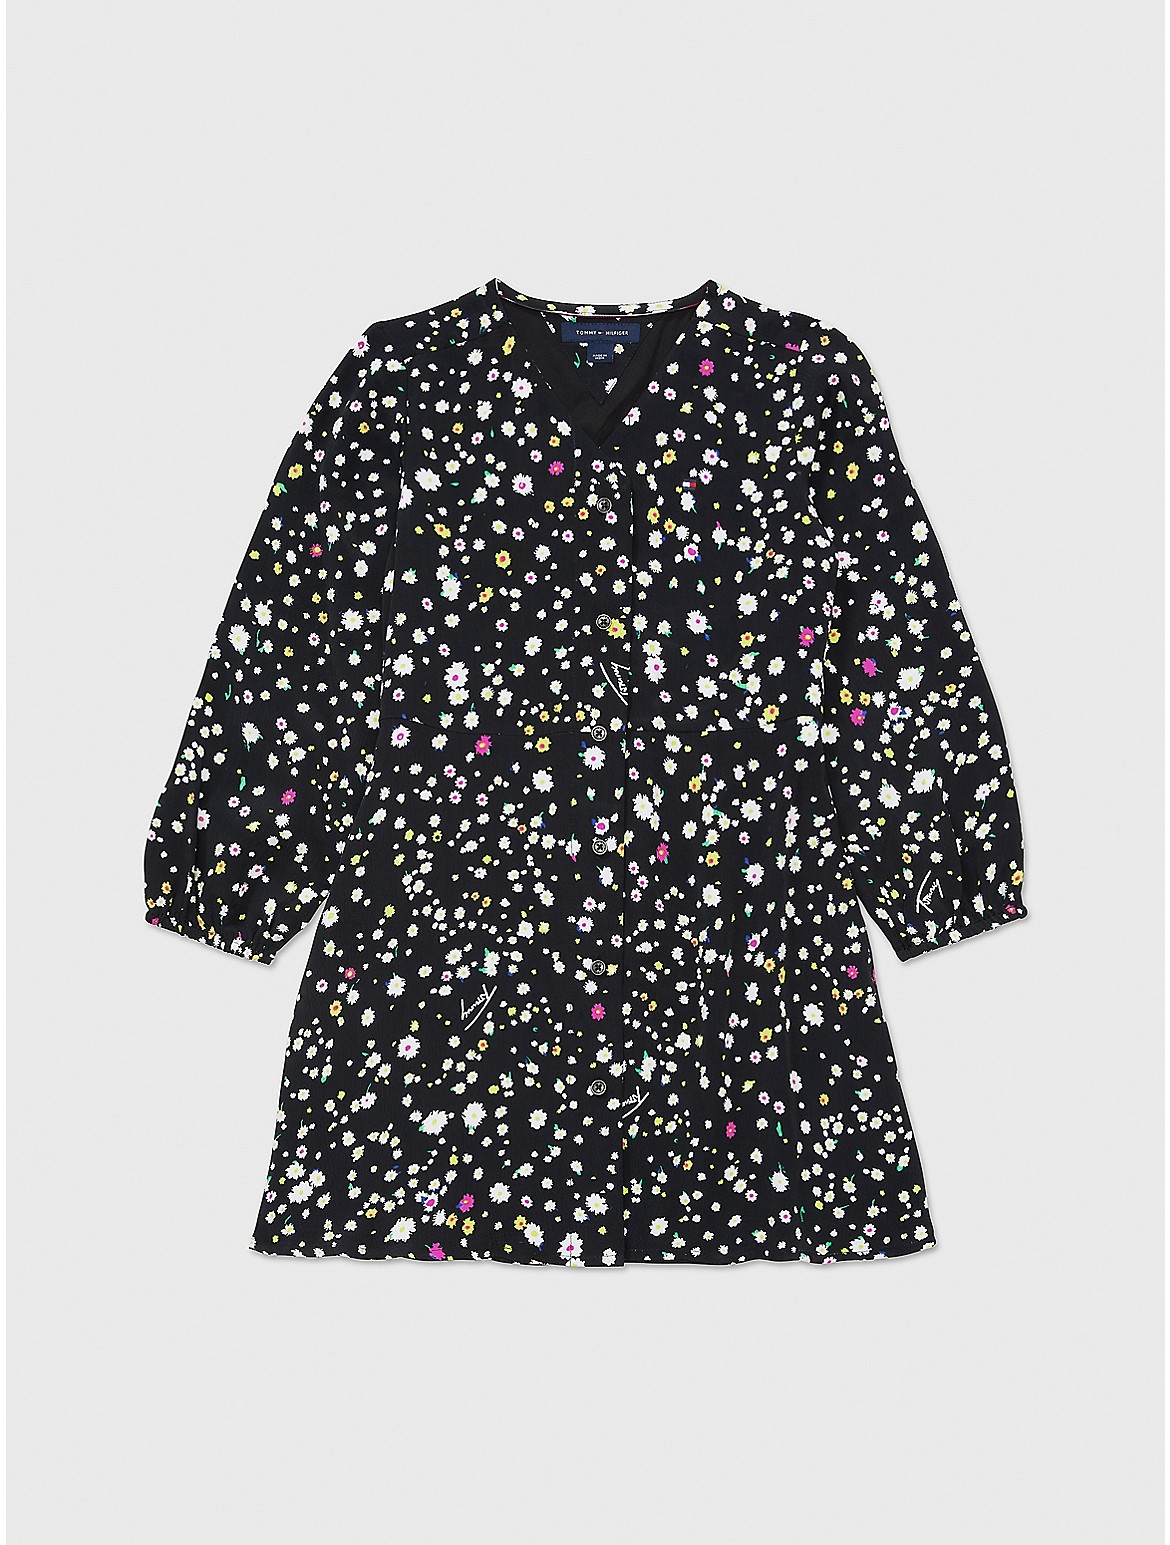 Tommy Hilfiger Girls' Kids' Floral Print Dress